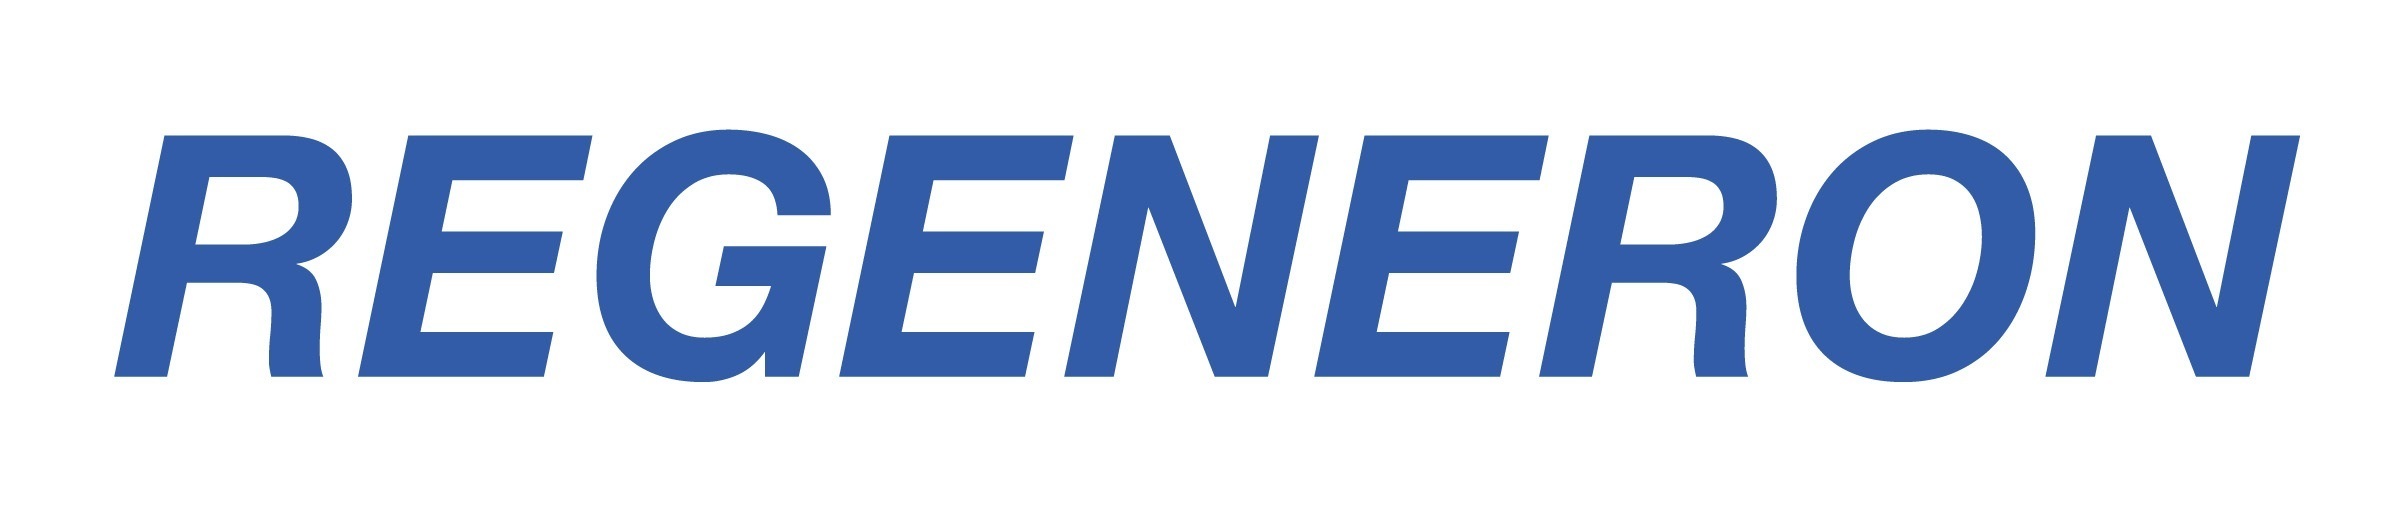 Regeneron-Pharmaceuticals-Inc-logo